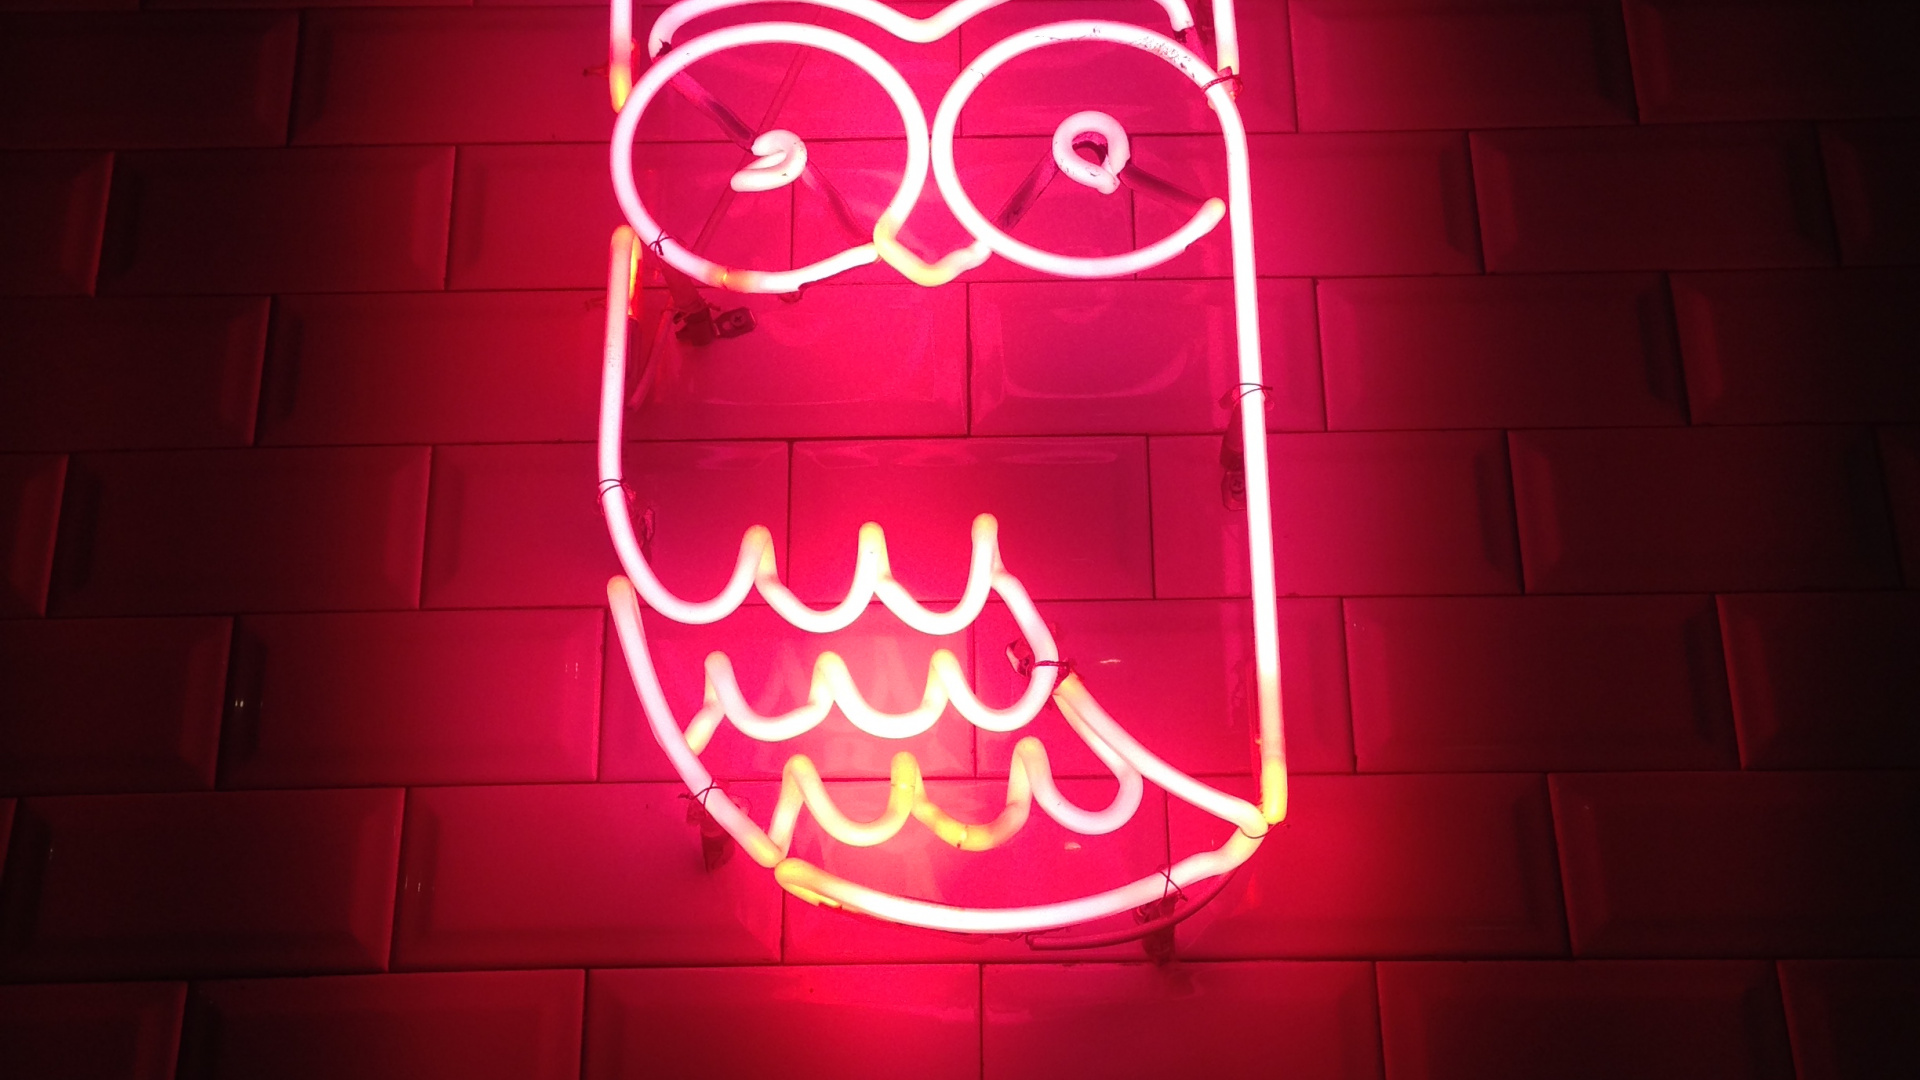 Aesthetic Neon Owl, Owls, Neon, Neon Lighting, Light. Wallpaper in 1920x1080 Resolution